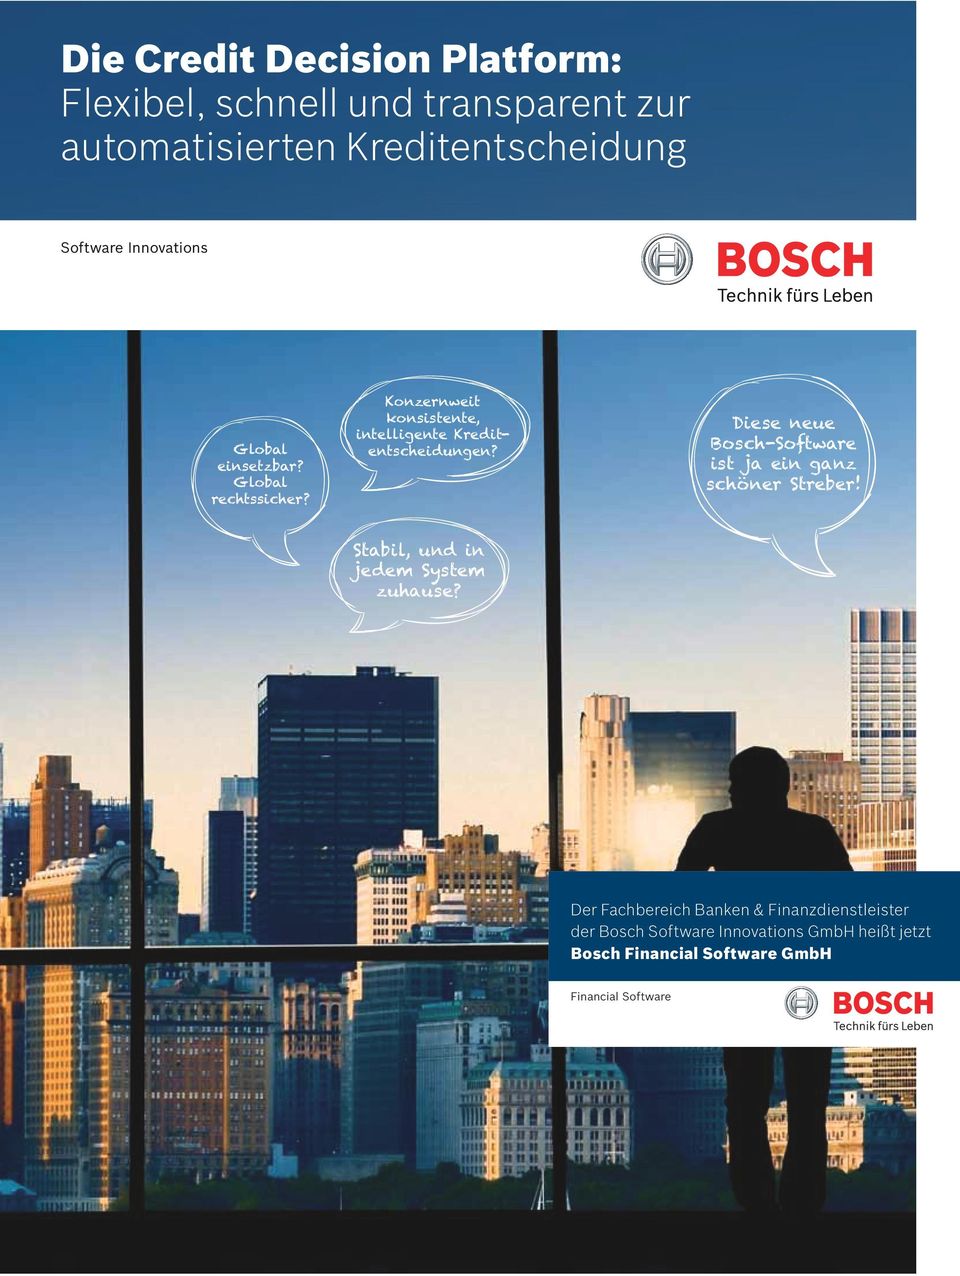 Diese neue Bosch-Software ist ja ein ganz schöner Streber! Stabil, und in jedem System zuhause?